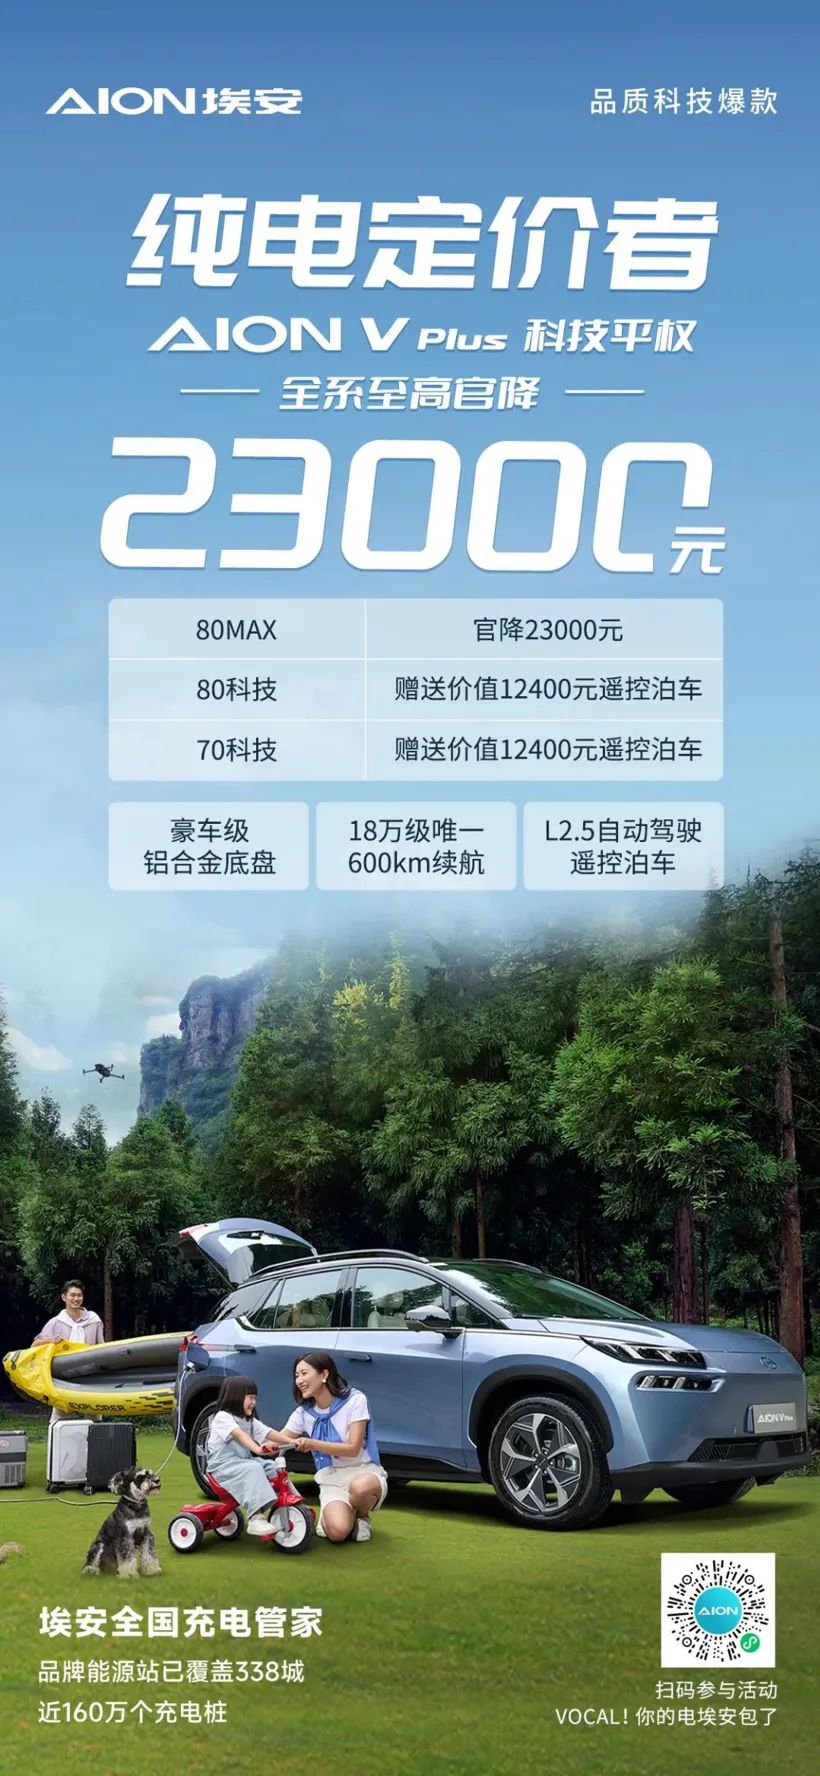 Wszystkie serie GAC Aion V Plus są wycenione na 23 000 RMB, co oznacza najwyższą oficjalną cenę